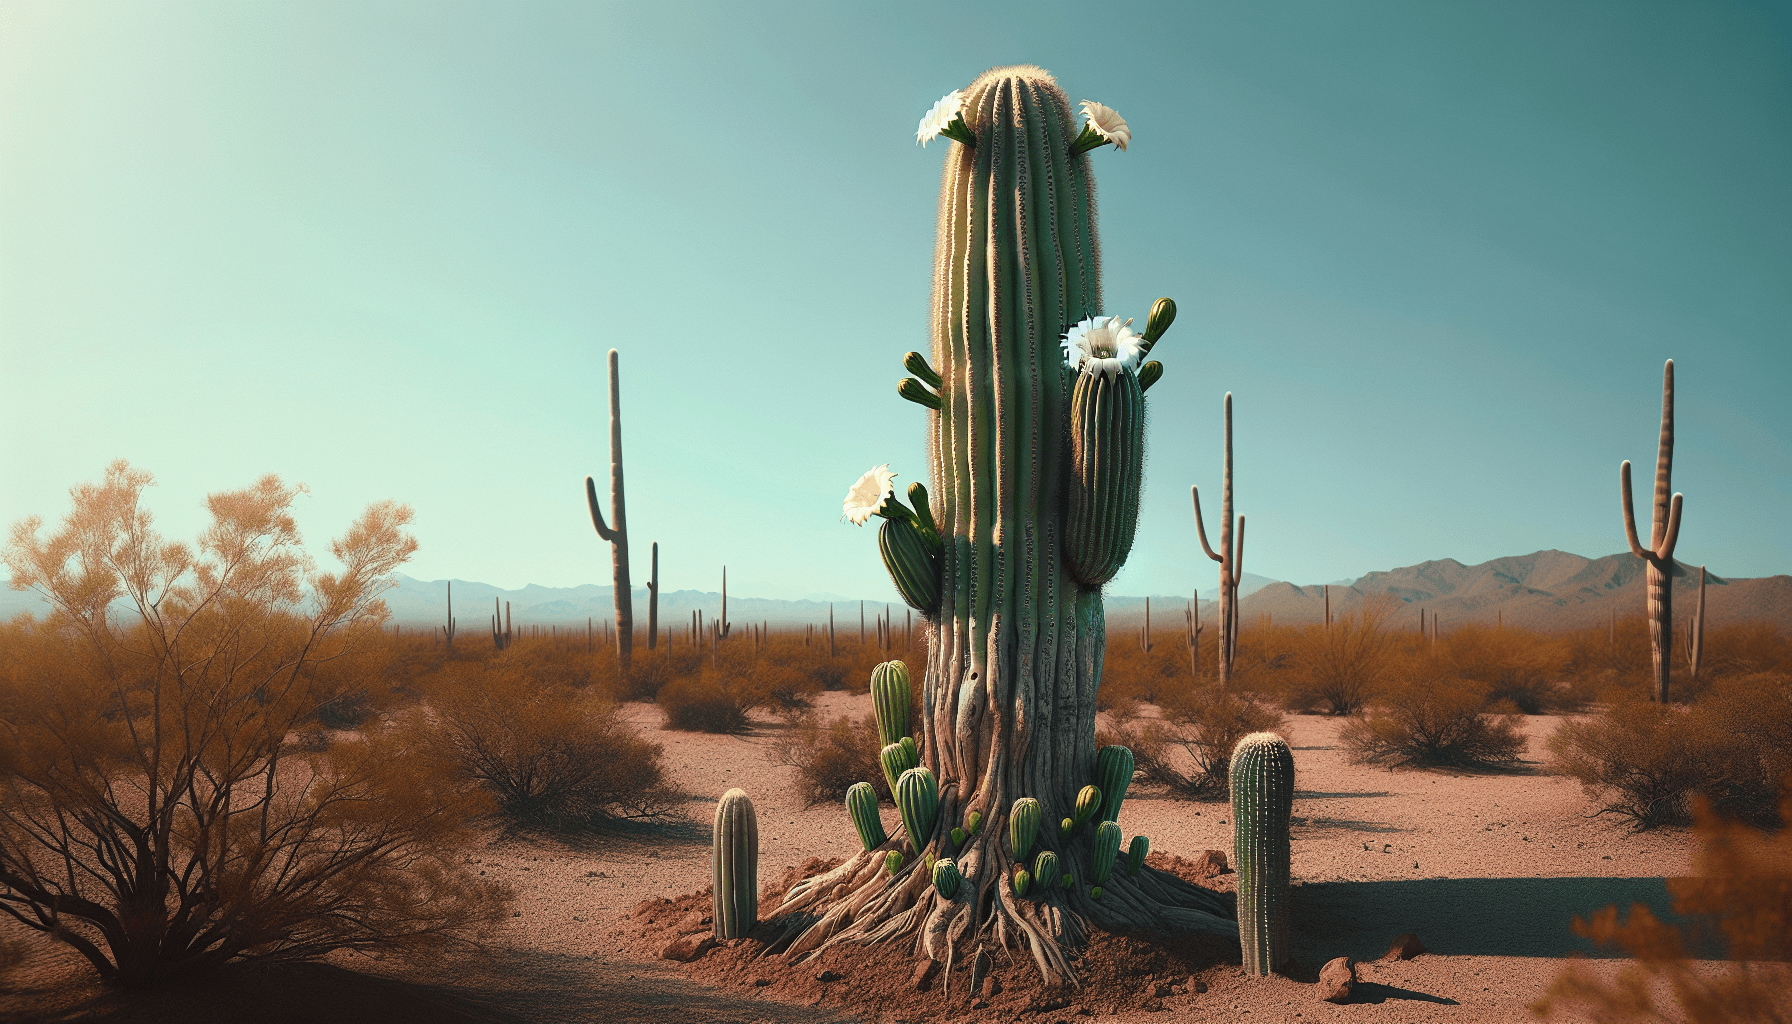 The Lifespan of Saguaro Cacti